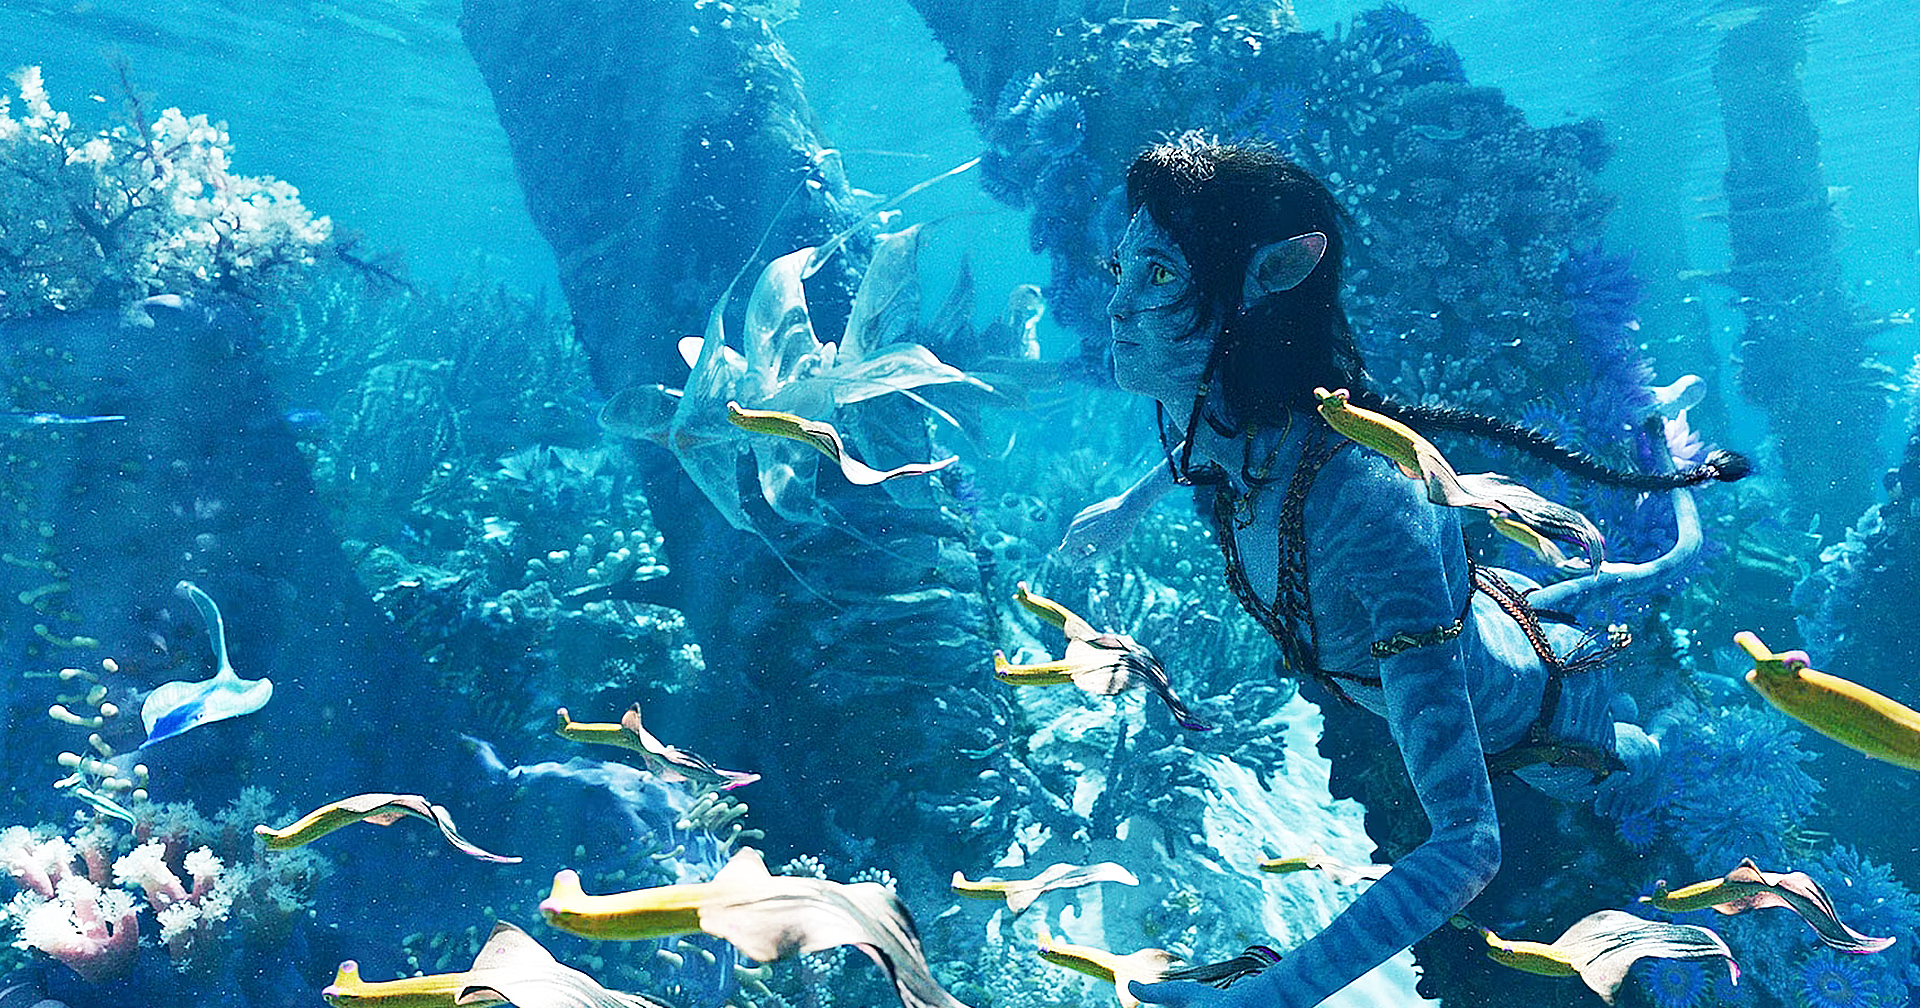 ภาพใหม่ของ ‘Avatar: The Way of Water’ เผยให้เห็นโลกใต้น้ำของ Pandora มากขึ้น